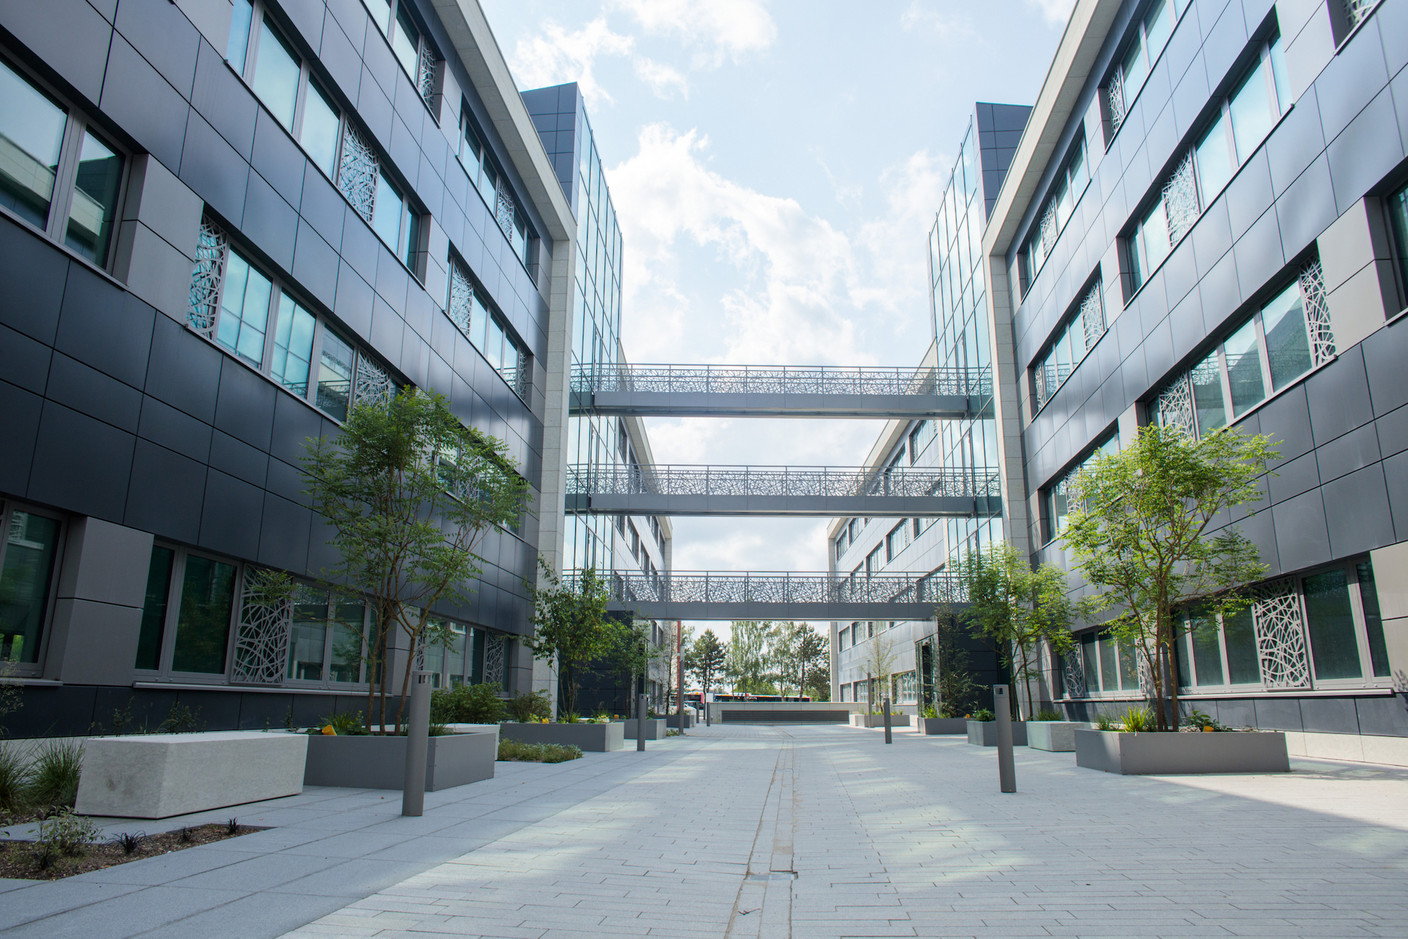 6.000 m2 d’espaces de bureaux pourront accueillir jusqu’à 400 salariés à terme, rue de Bitbourg. (Photo: Matic Zorman)